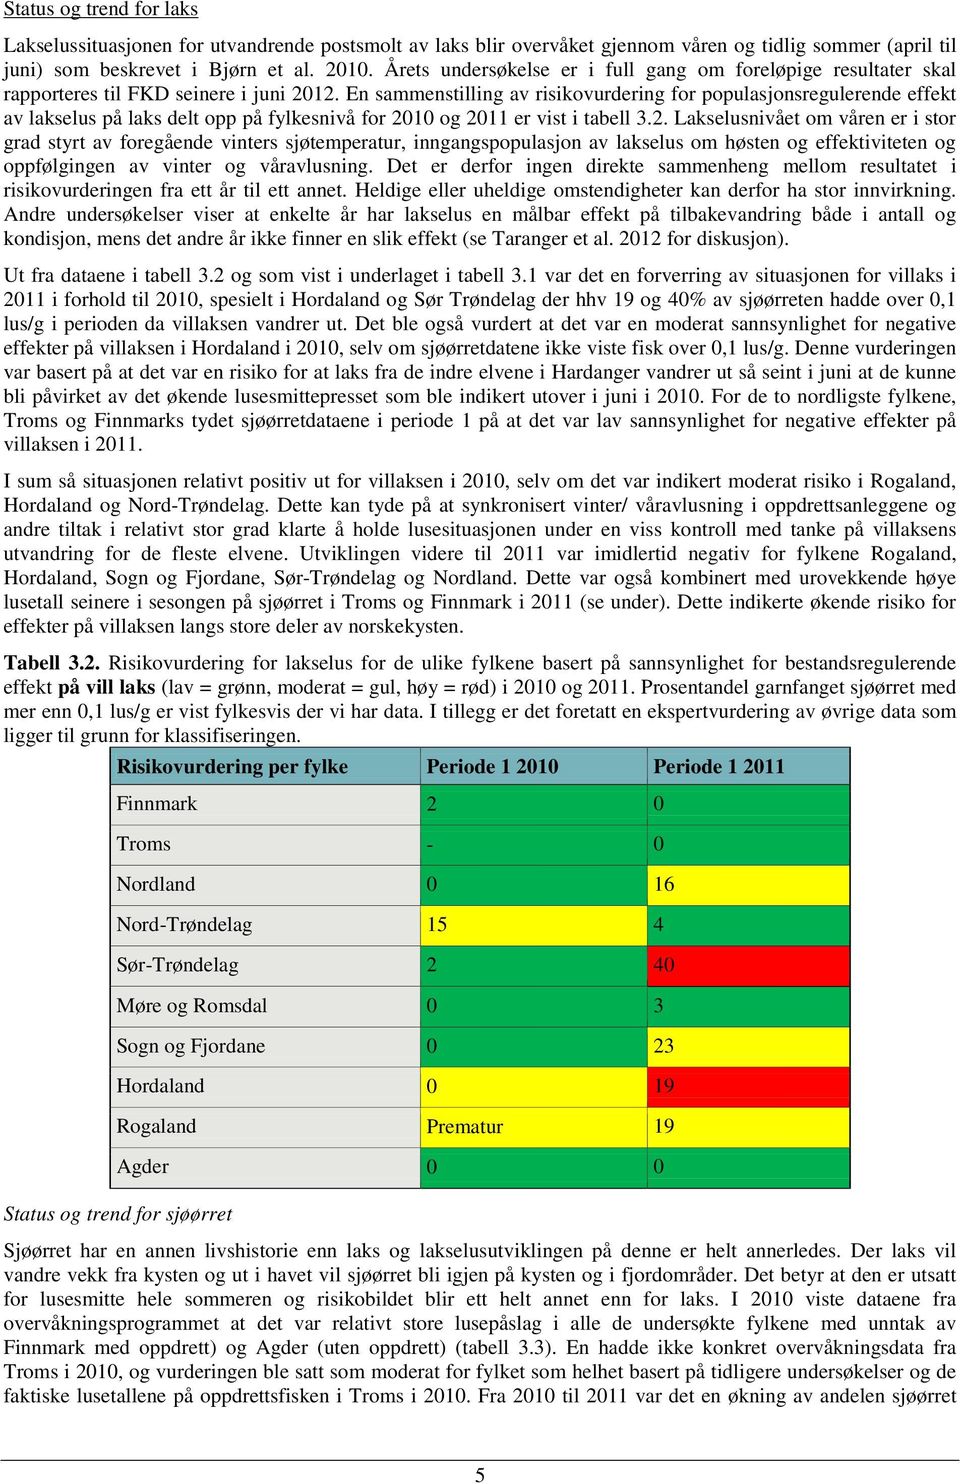 En sammenstilling av risikovurdering for populasjonsregulerende effekt av lakselus på laks delt opp på fylkesnivå for 20